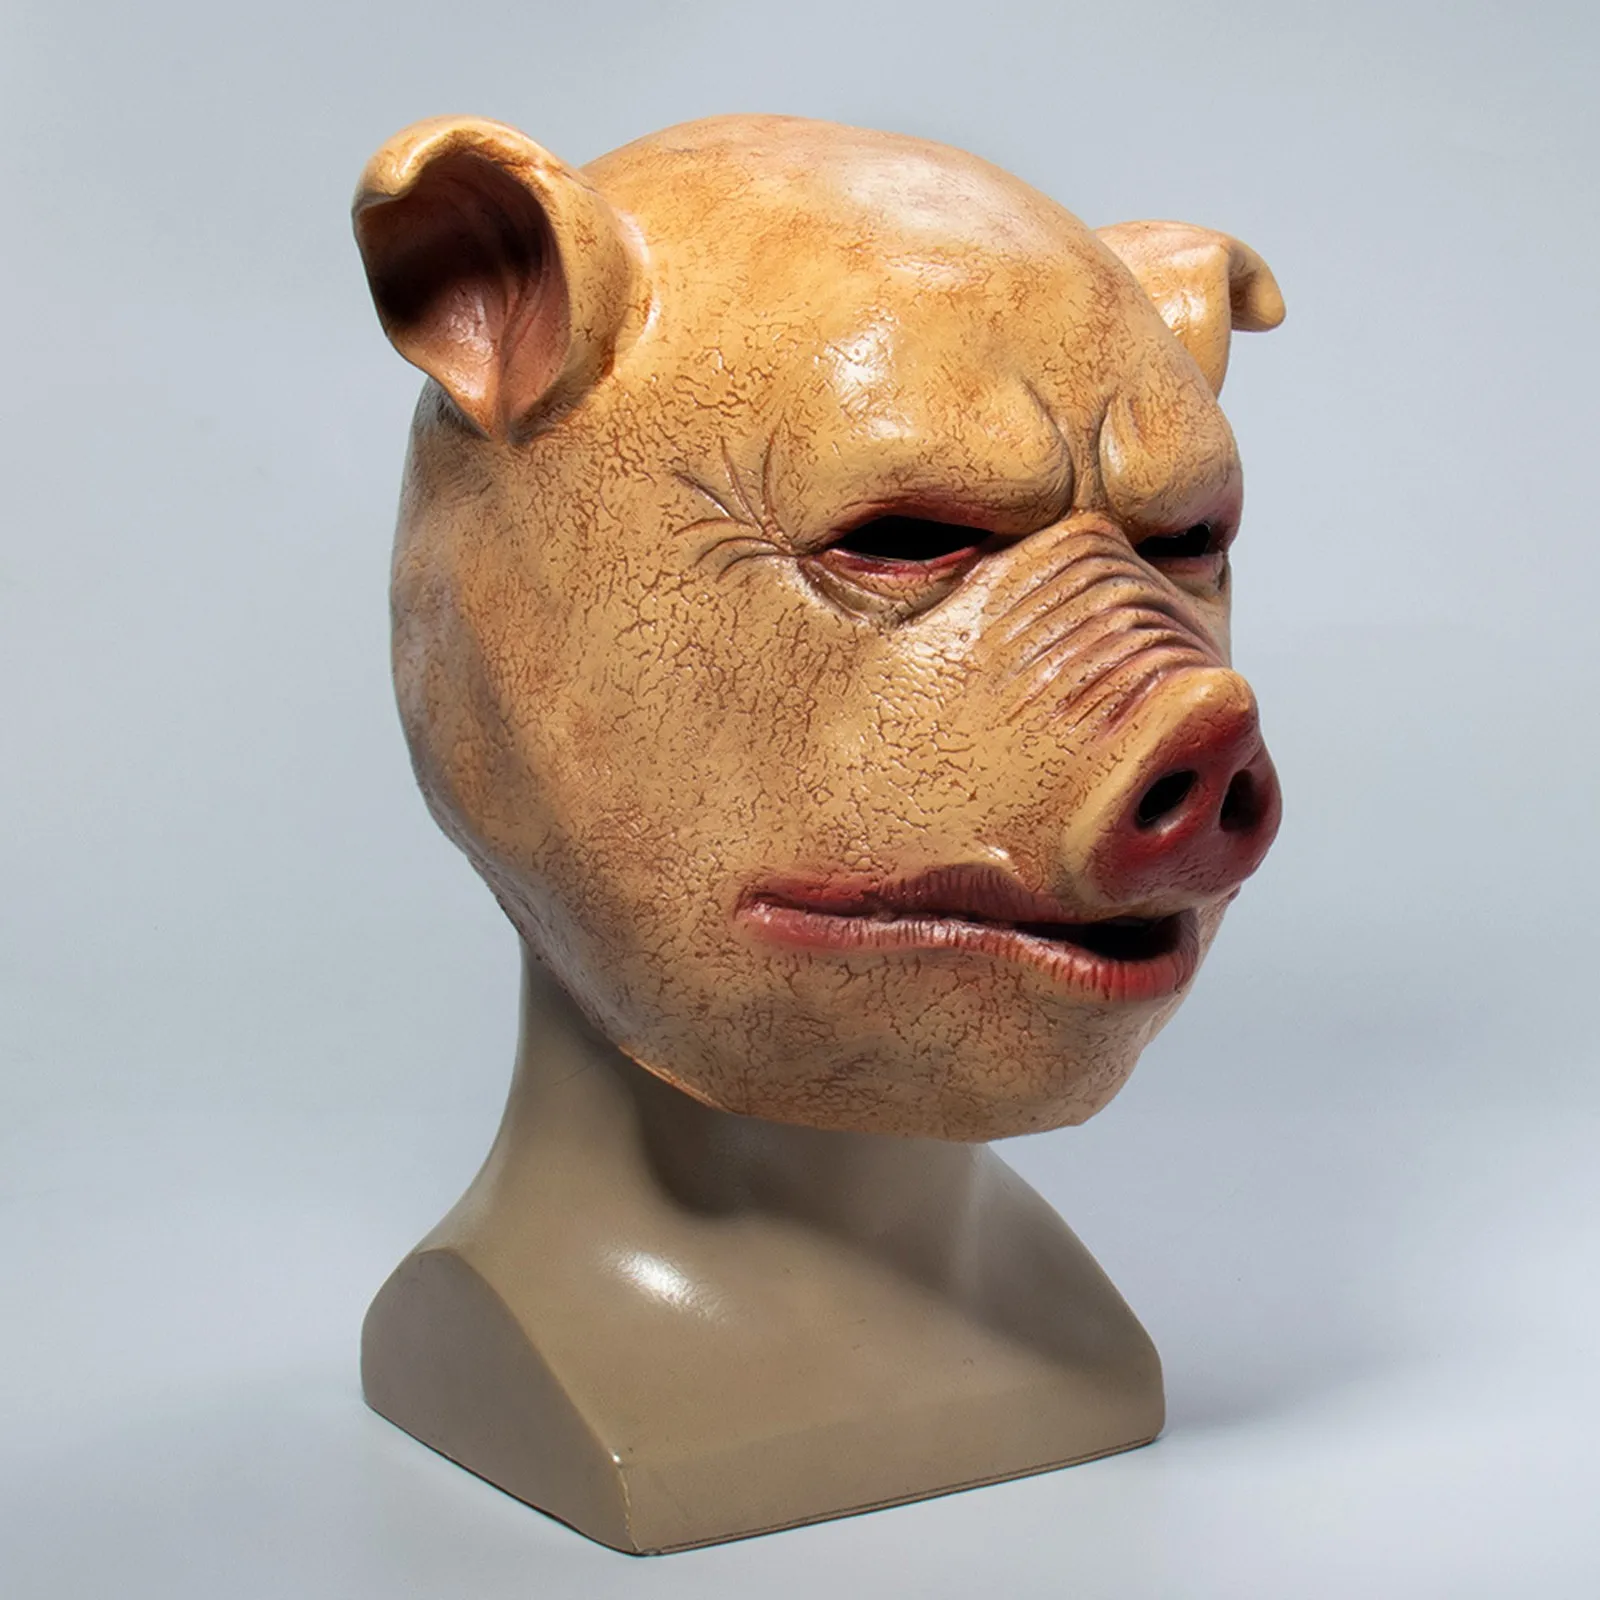 Латексная маска свиньи